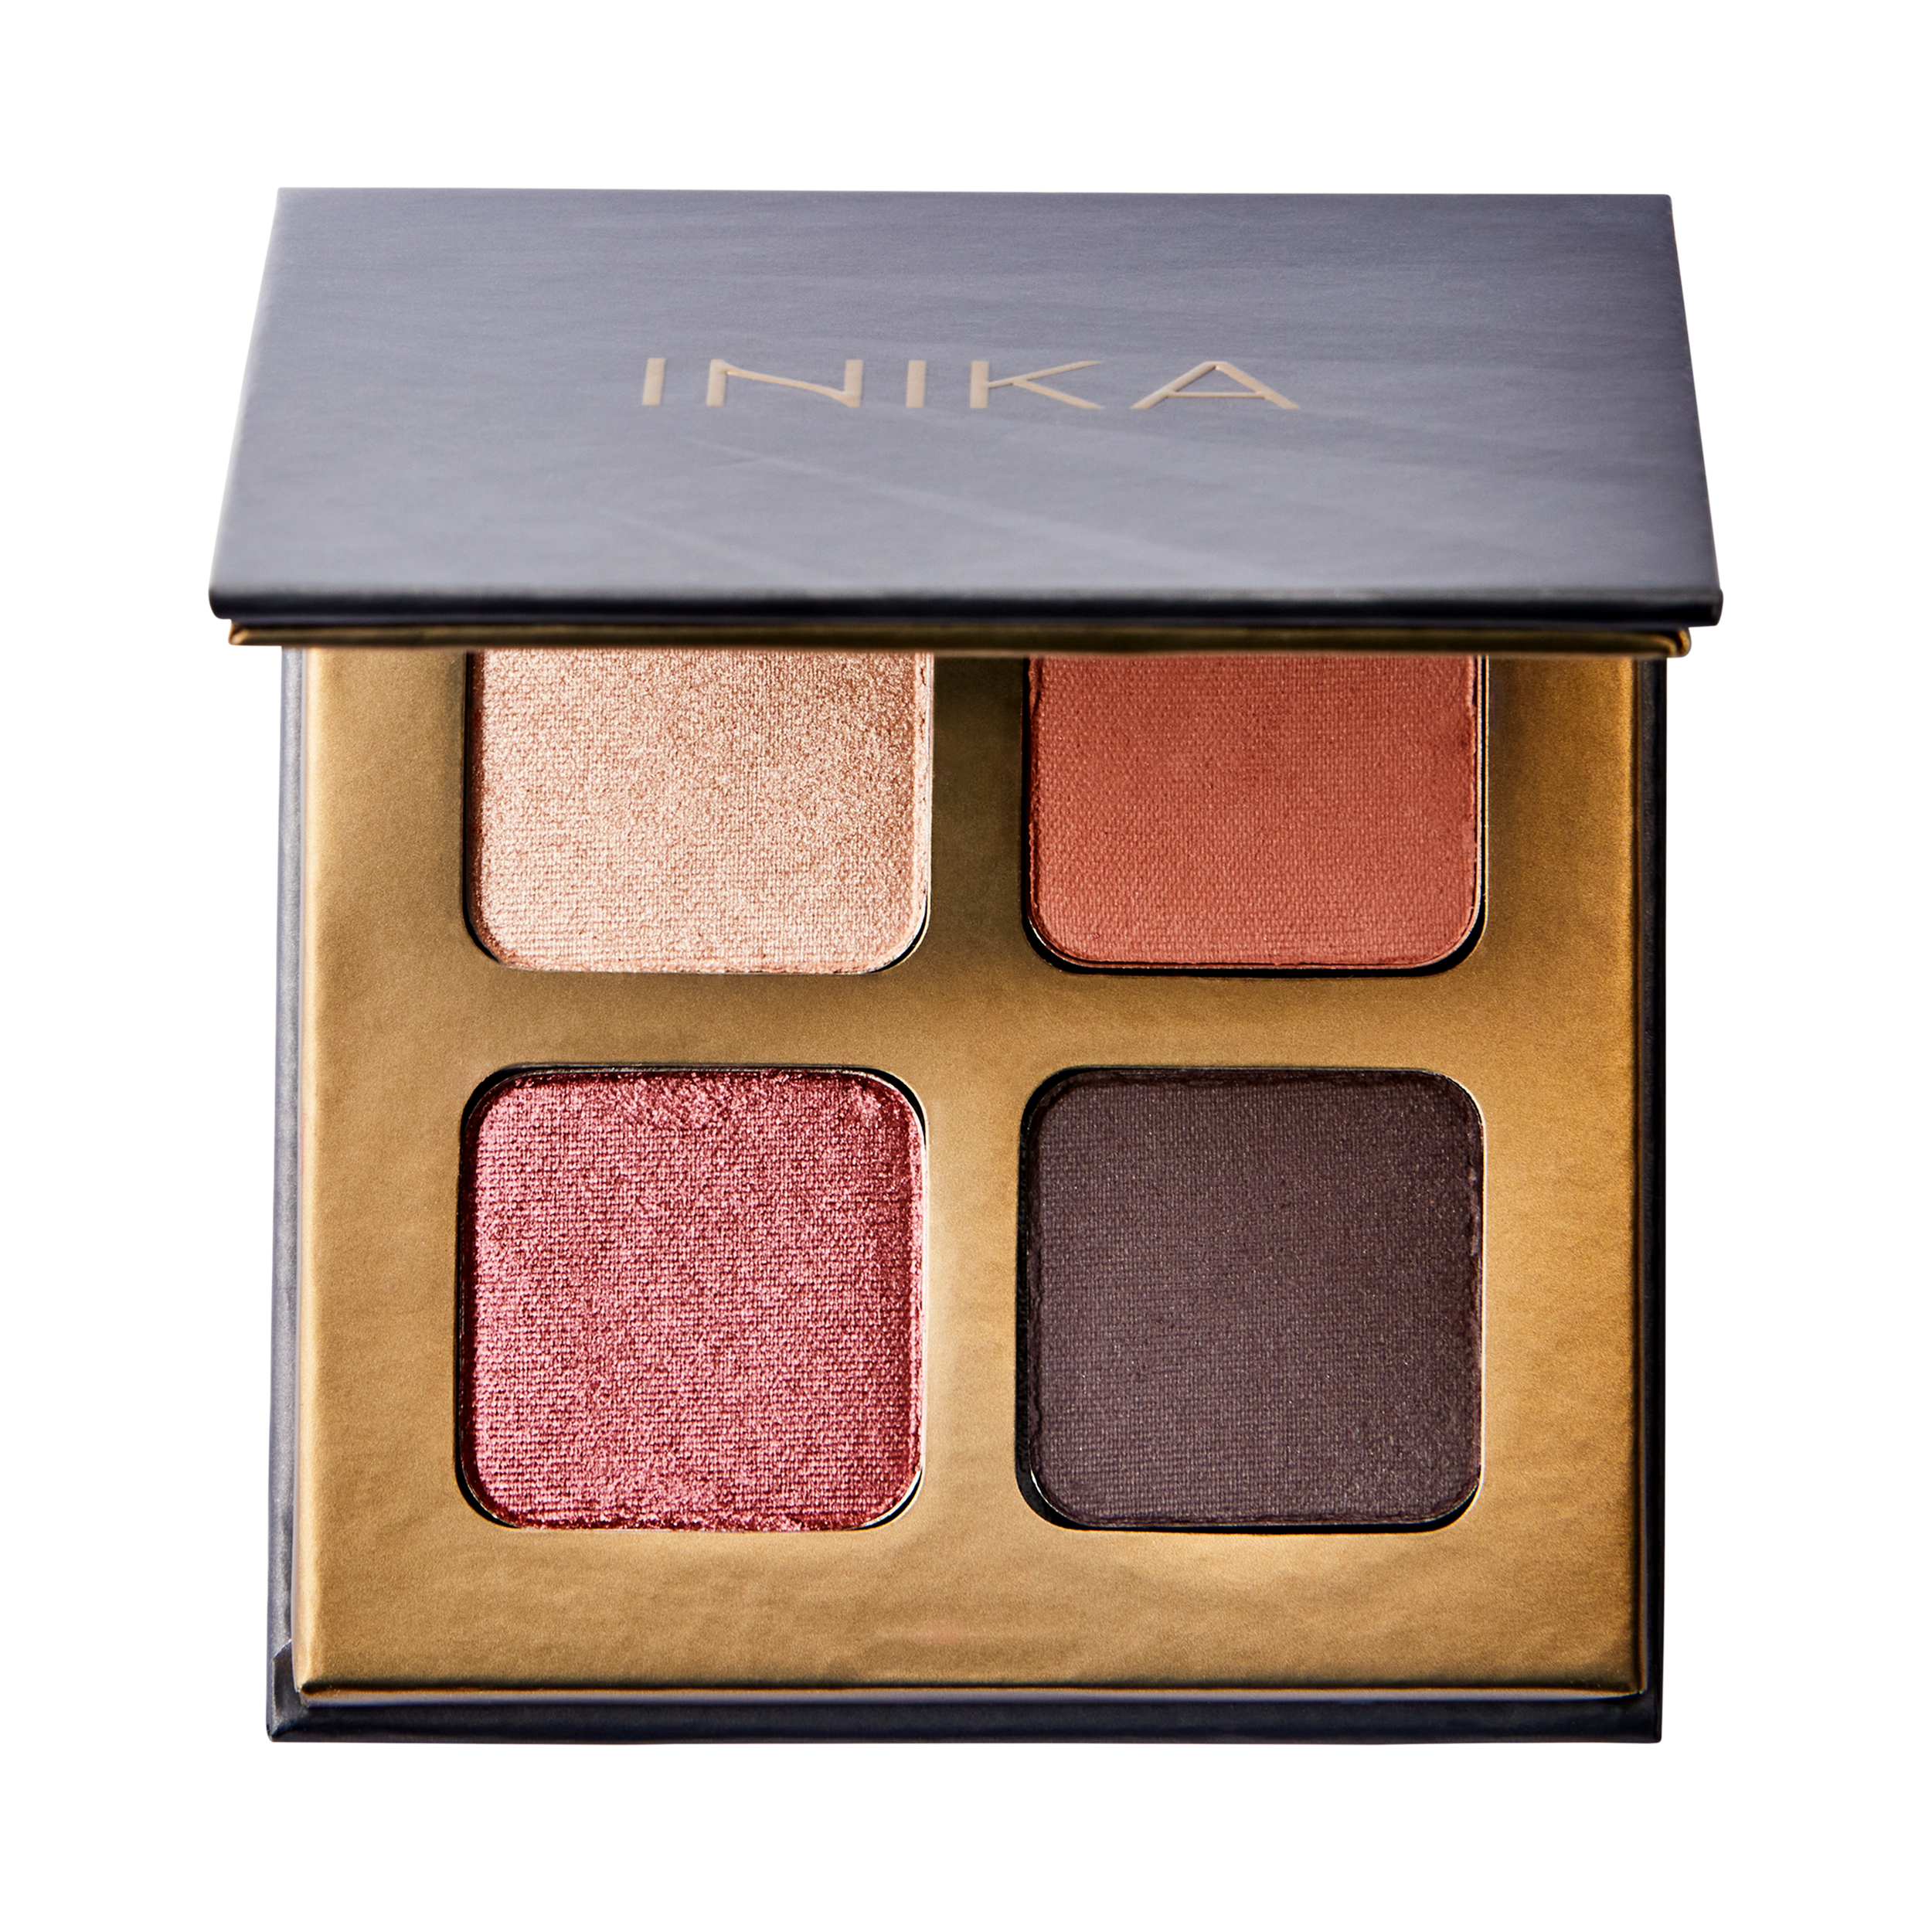 Inika - Quad Eyeshadow Palette (Flowers)